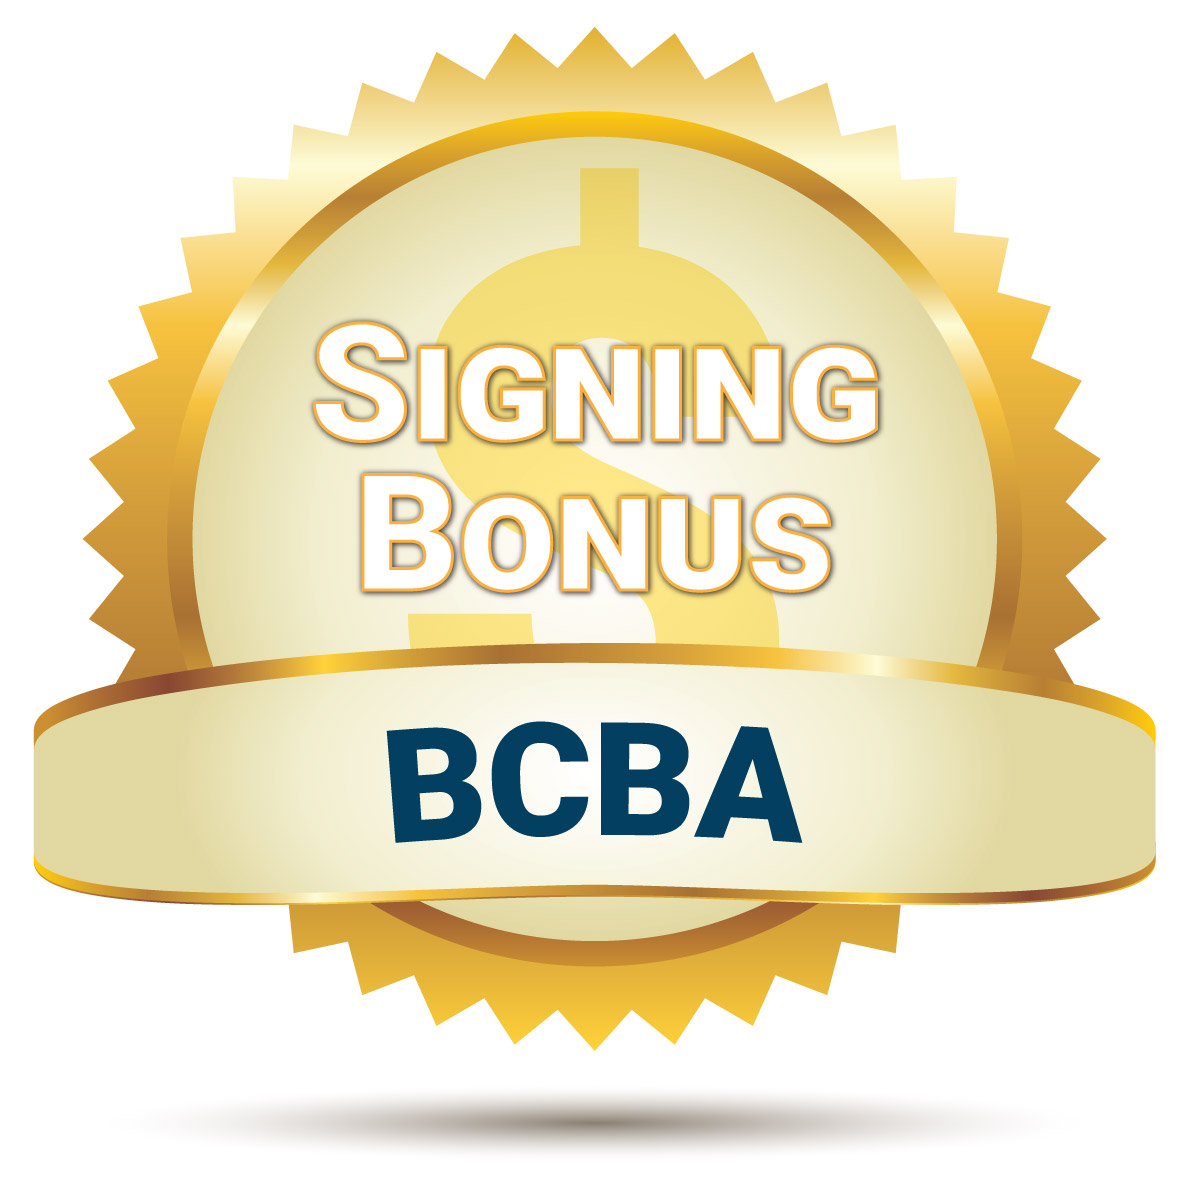 BCBA Signing Bonus